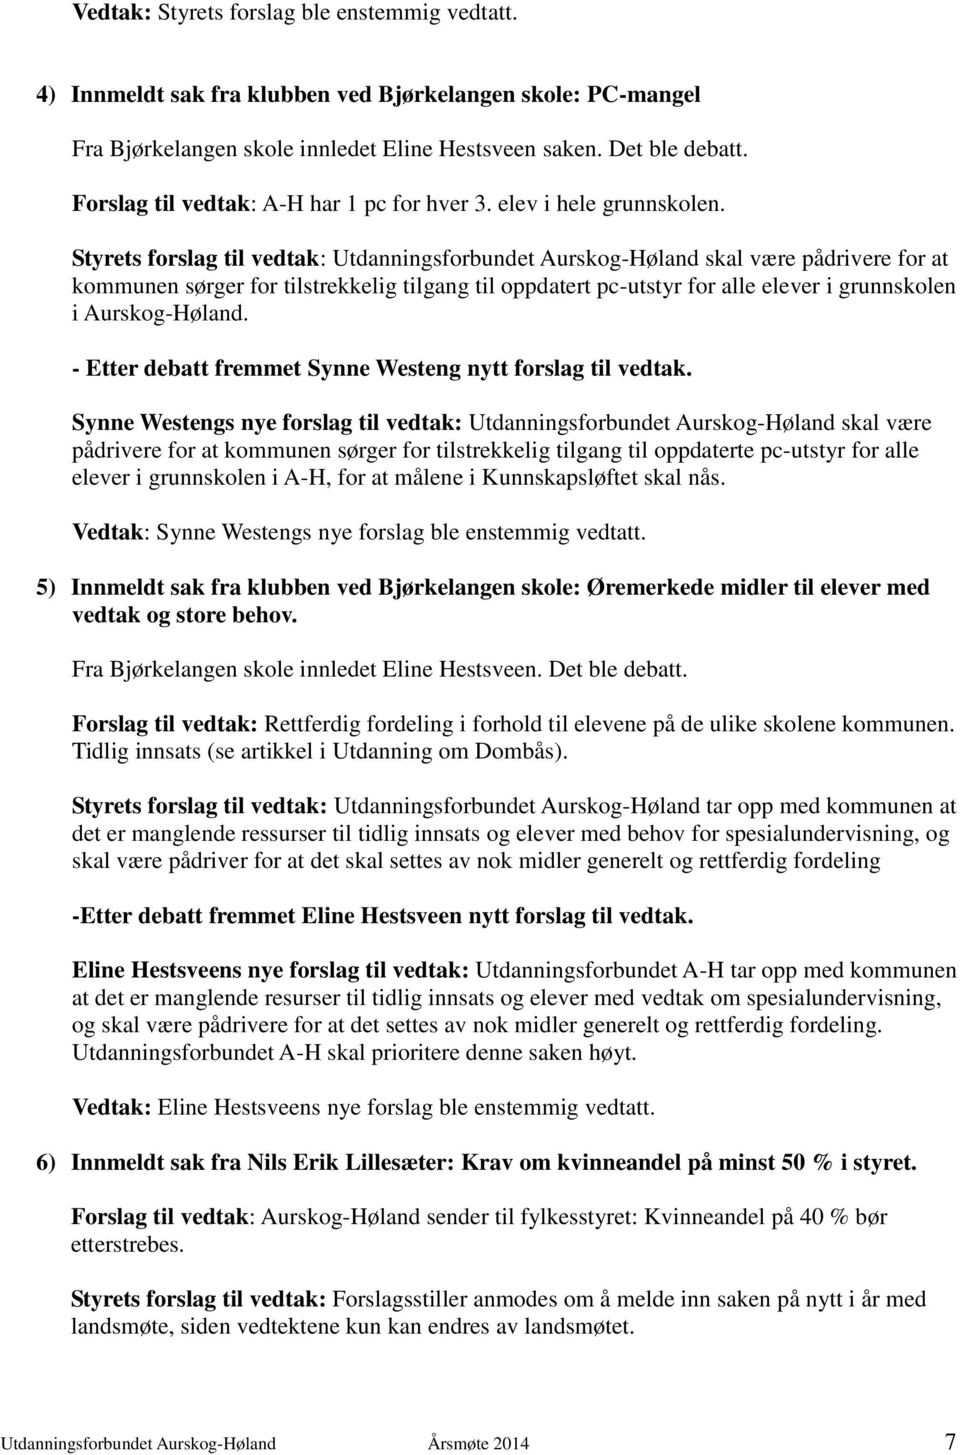 Styrets forslag til vedtak: Utdanningsforbundet Aurskog-Høland skal være pådrivere for at kommunen sørger for tilstrekkelig tilgang til oppdatert pc-utstyr for alle elever i grunnskolen i